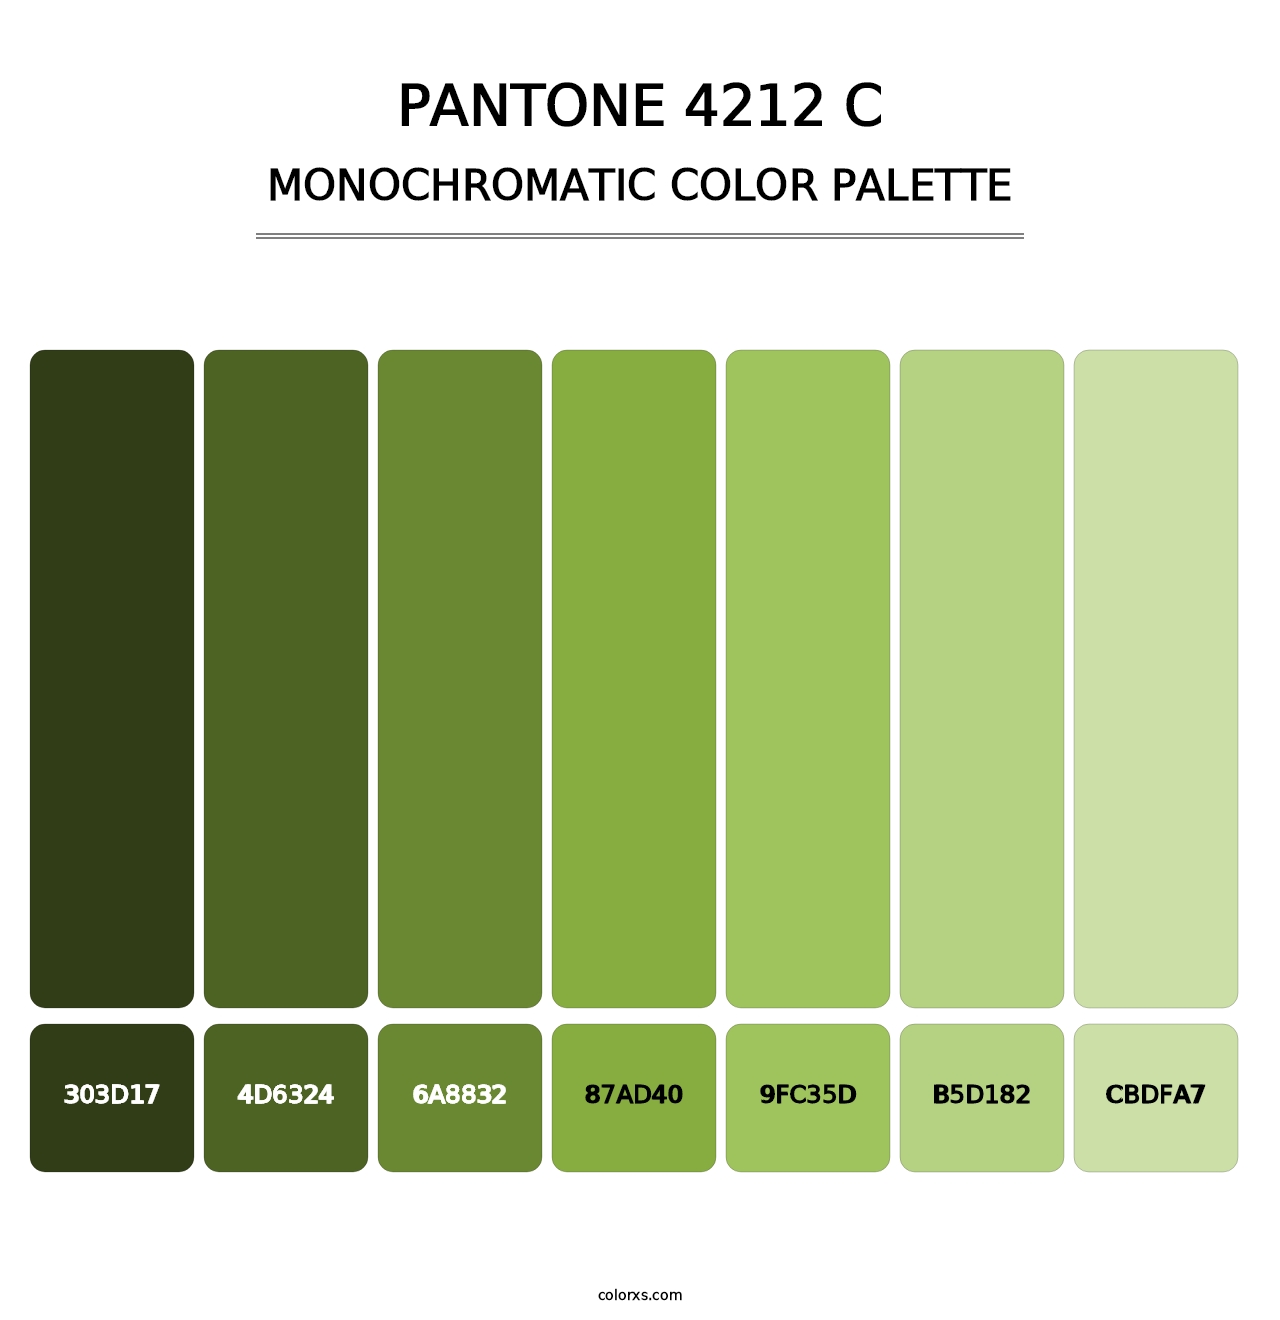 PANTONE 4212 C - Monochromatic Color Palette